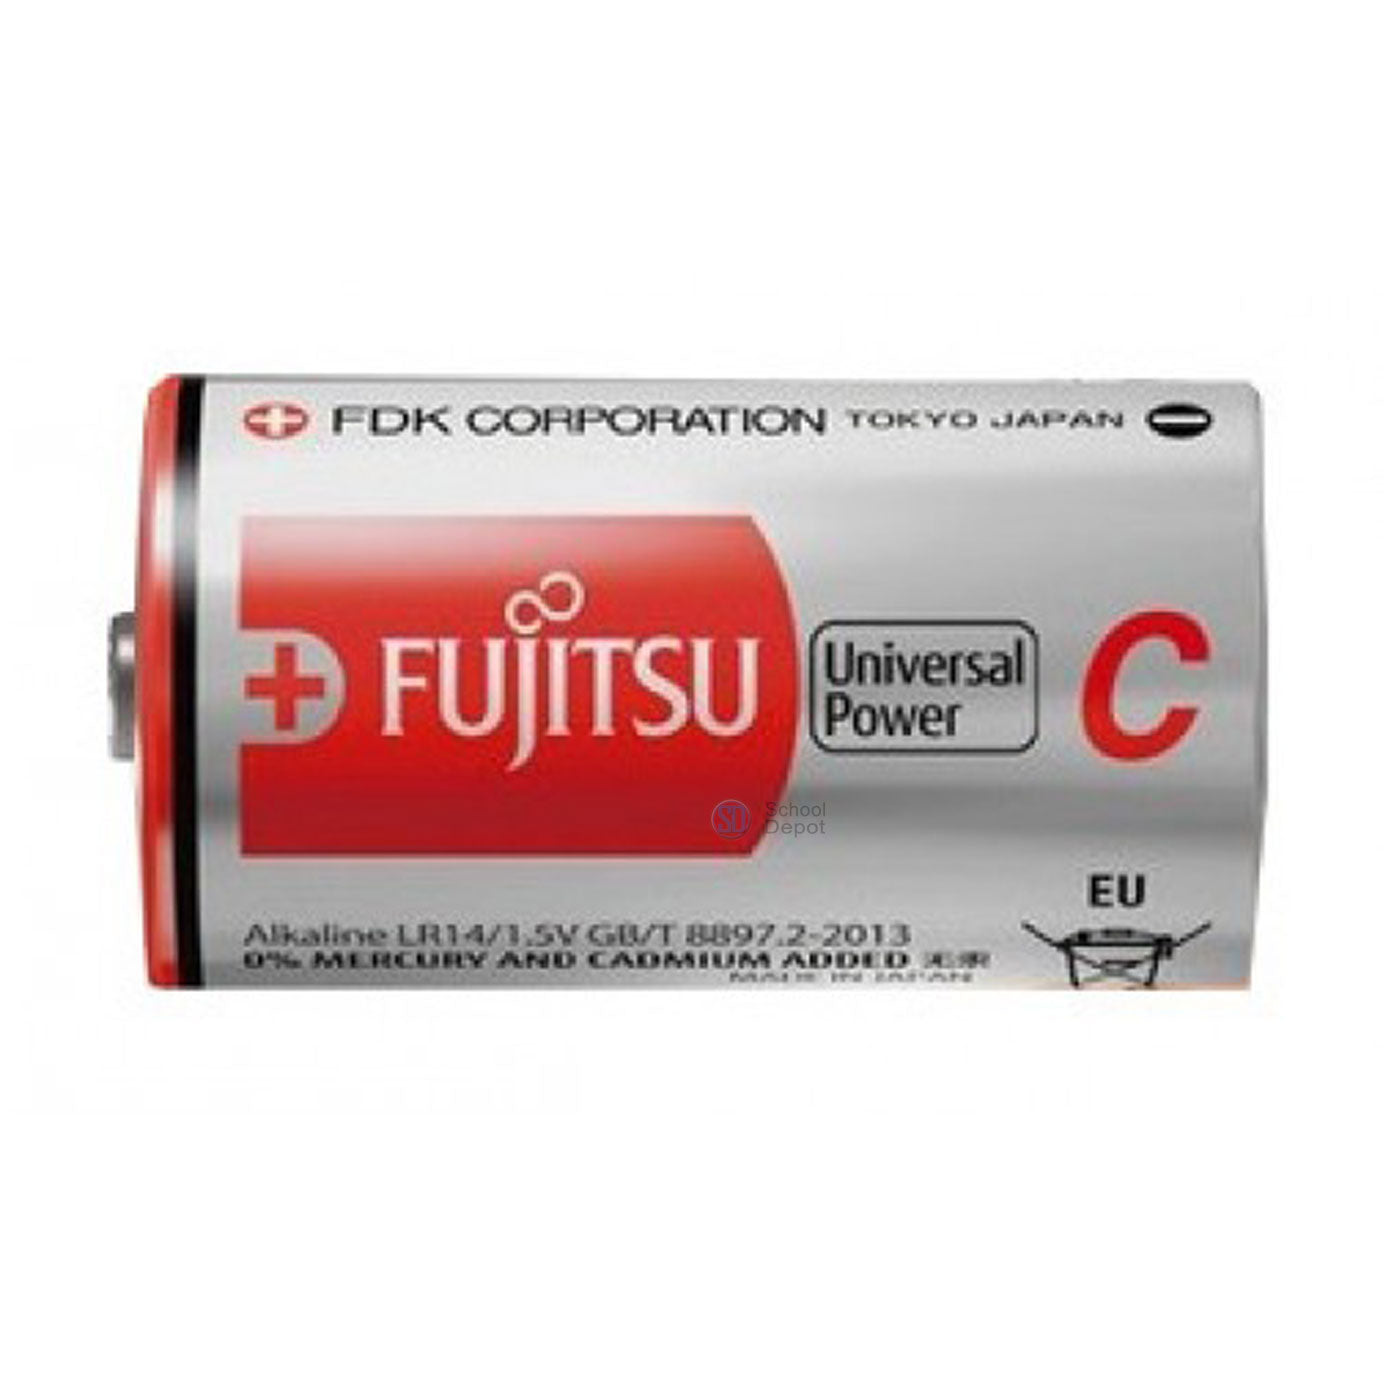 Fujitsu Battery C 1.5 Volt